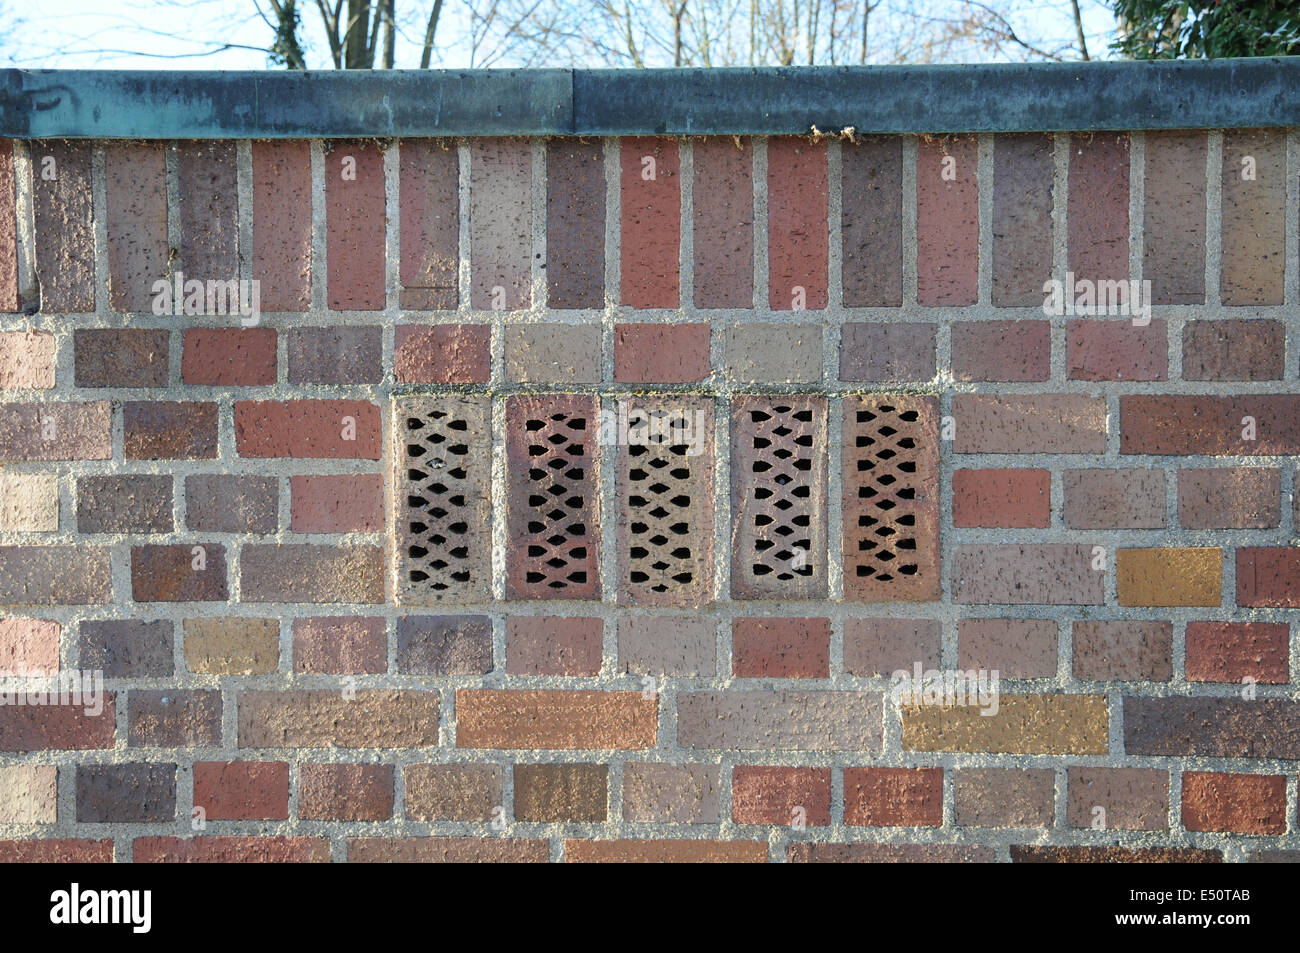 Wall of clinker-bricks Stock Photo